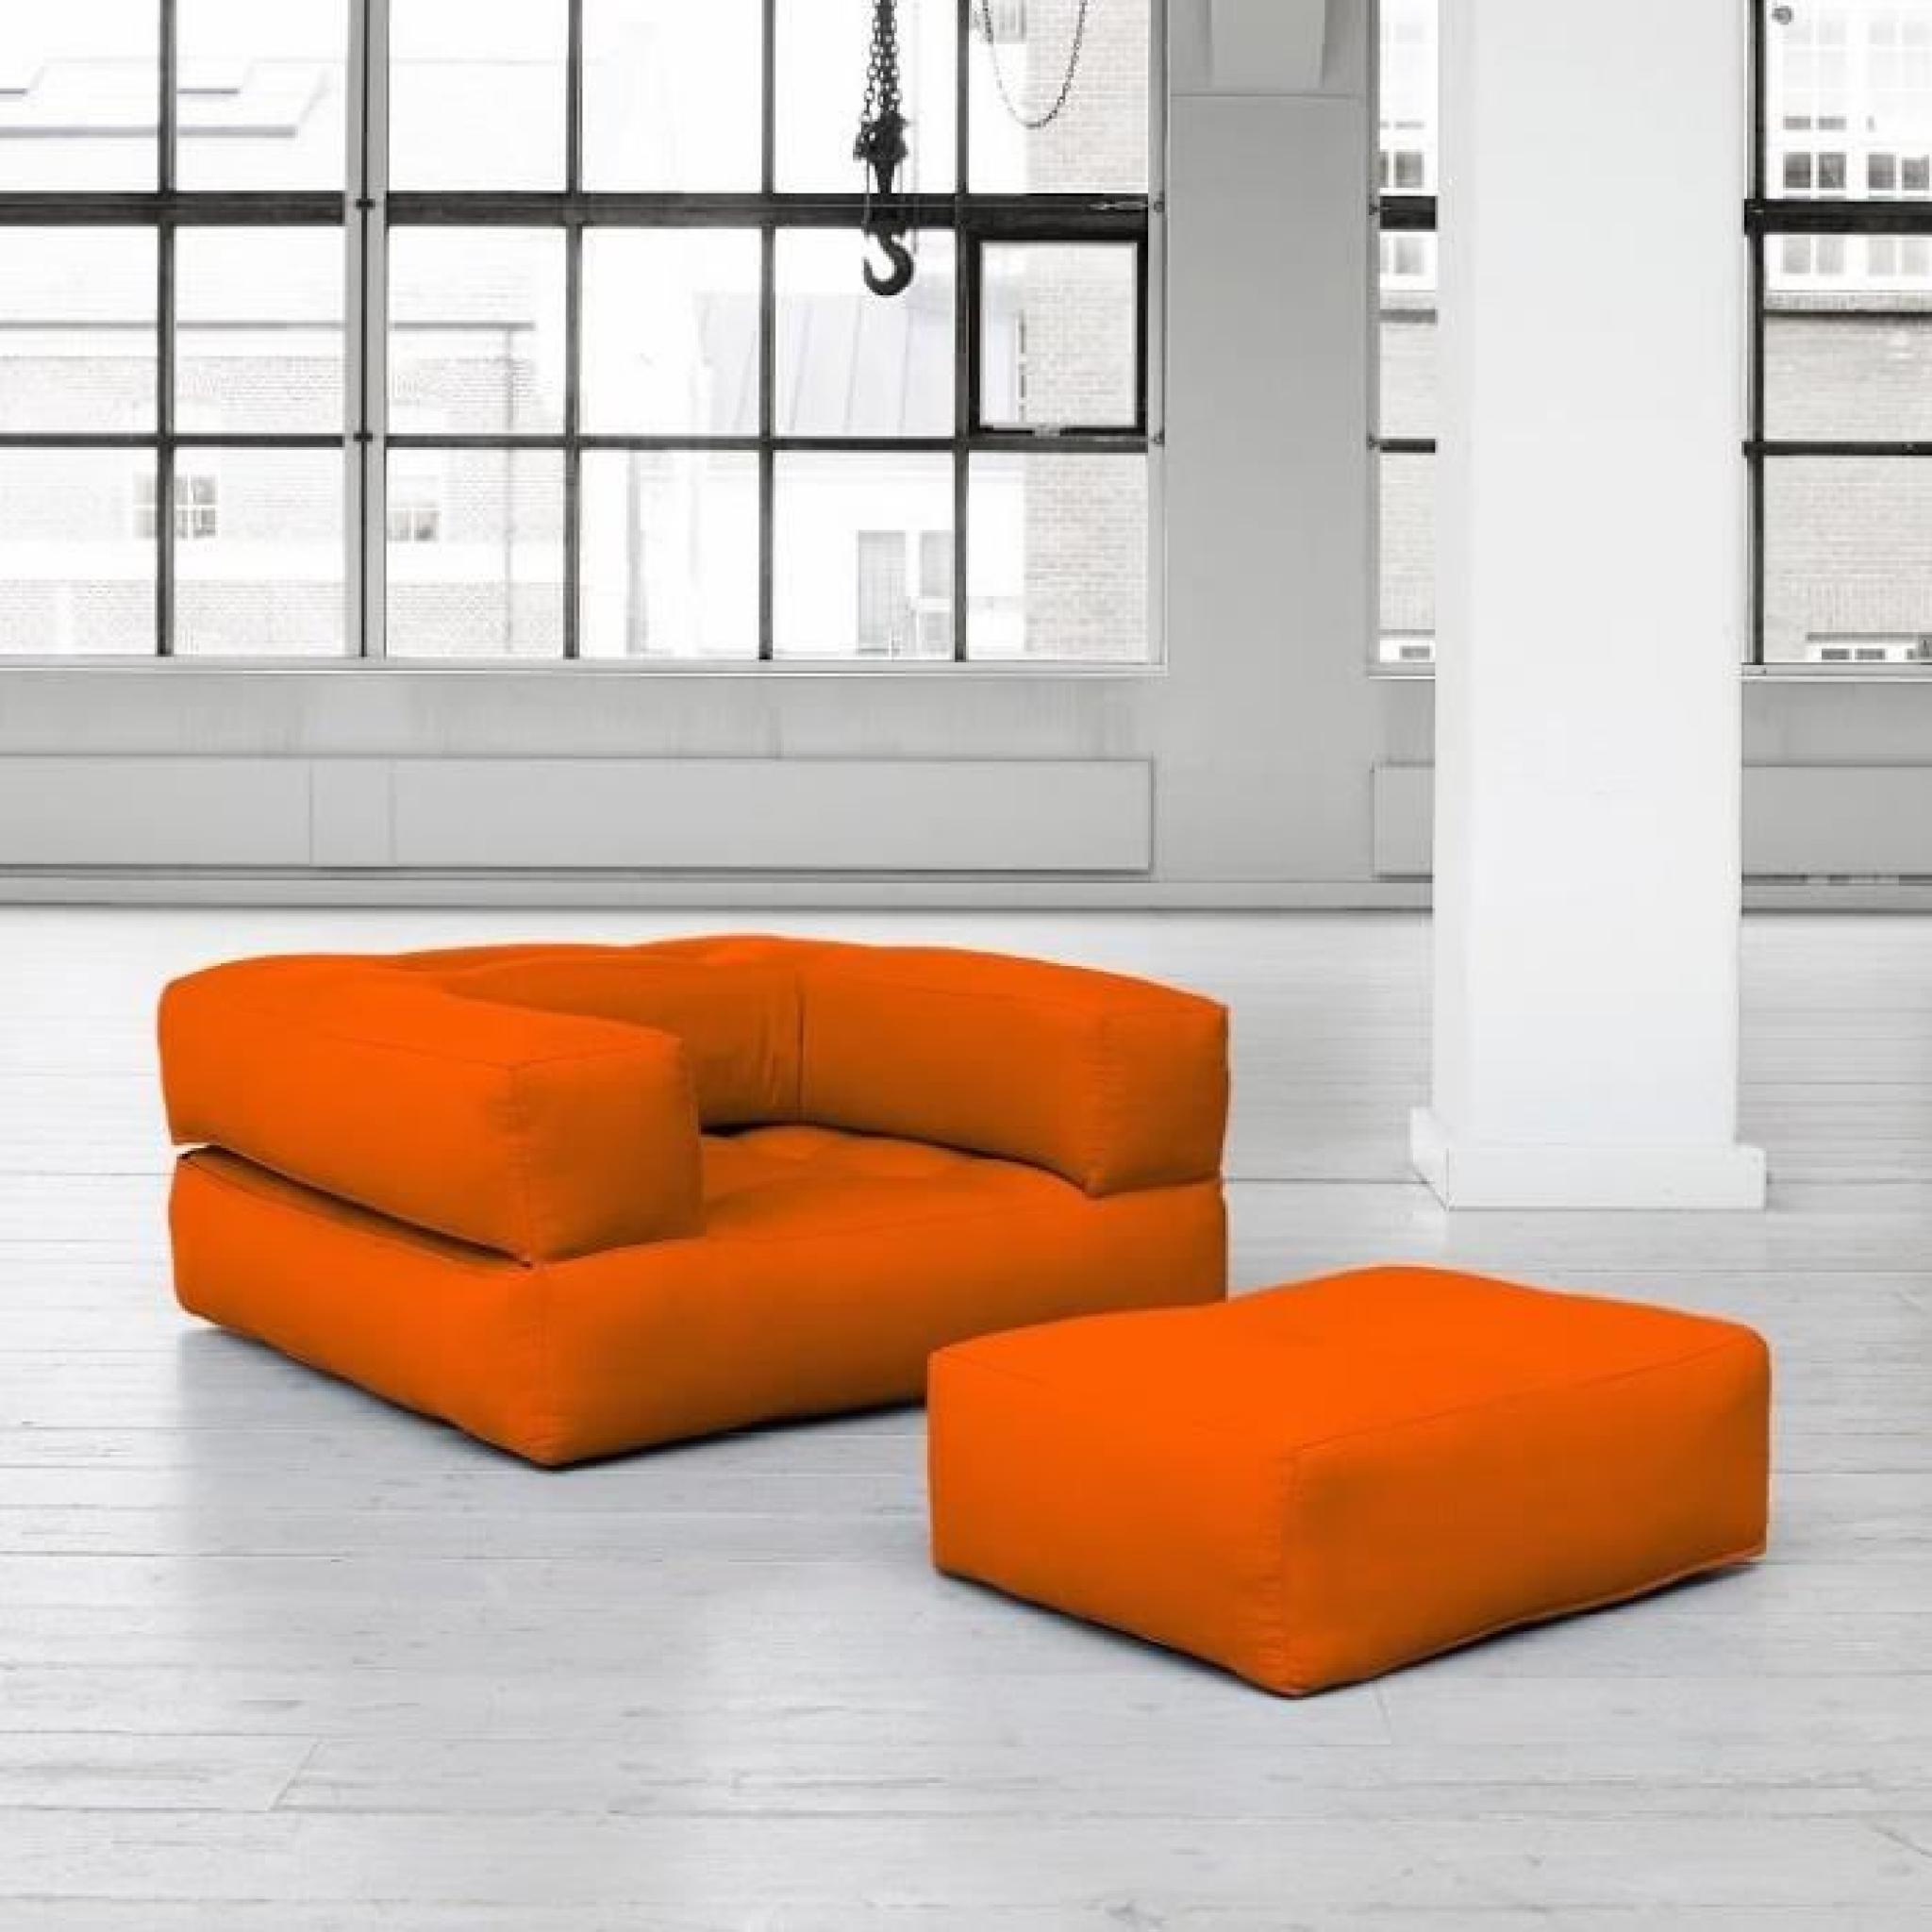 Fauteuil CUBE 3 en 1 futon orange couchage 90*190*25cm